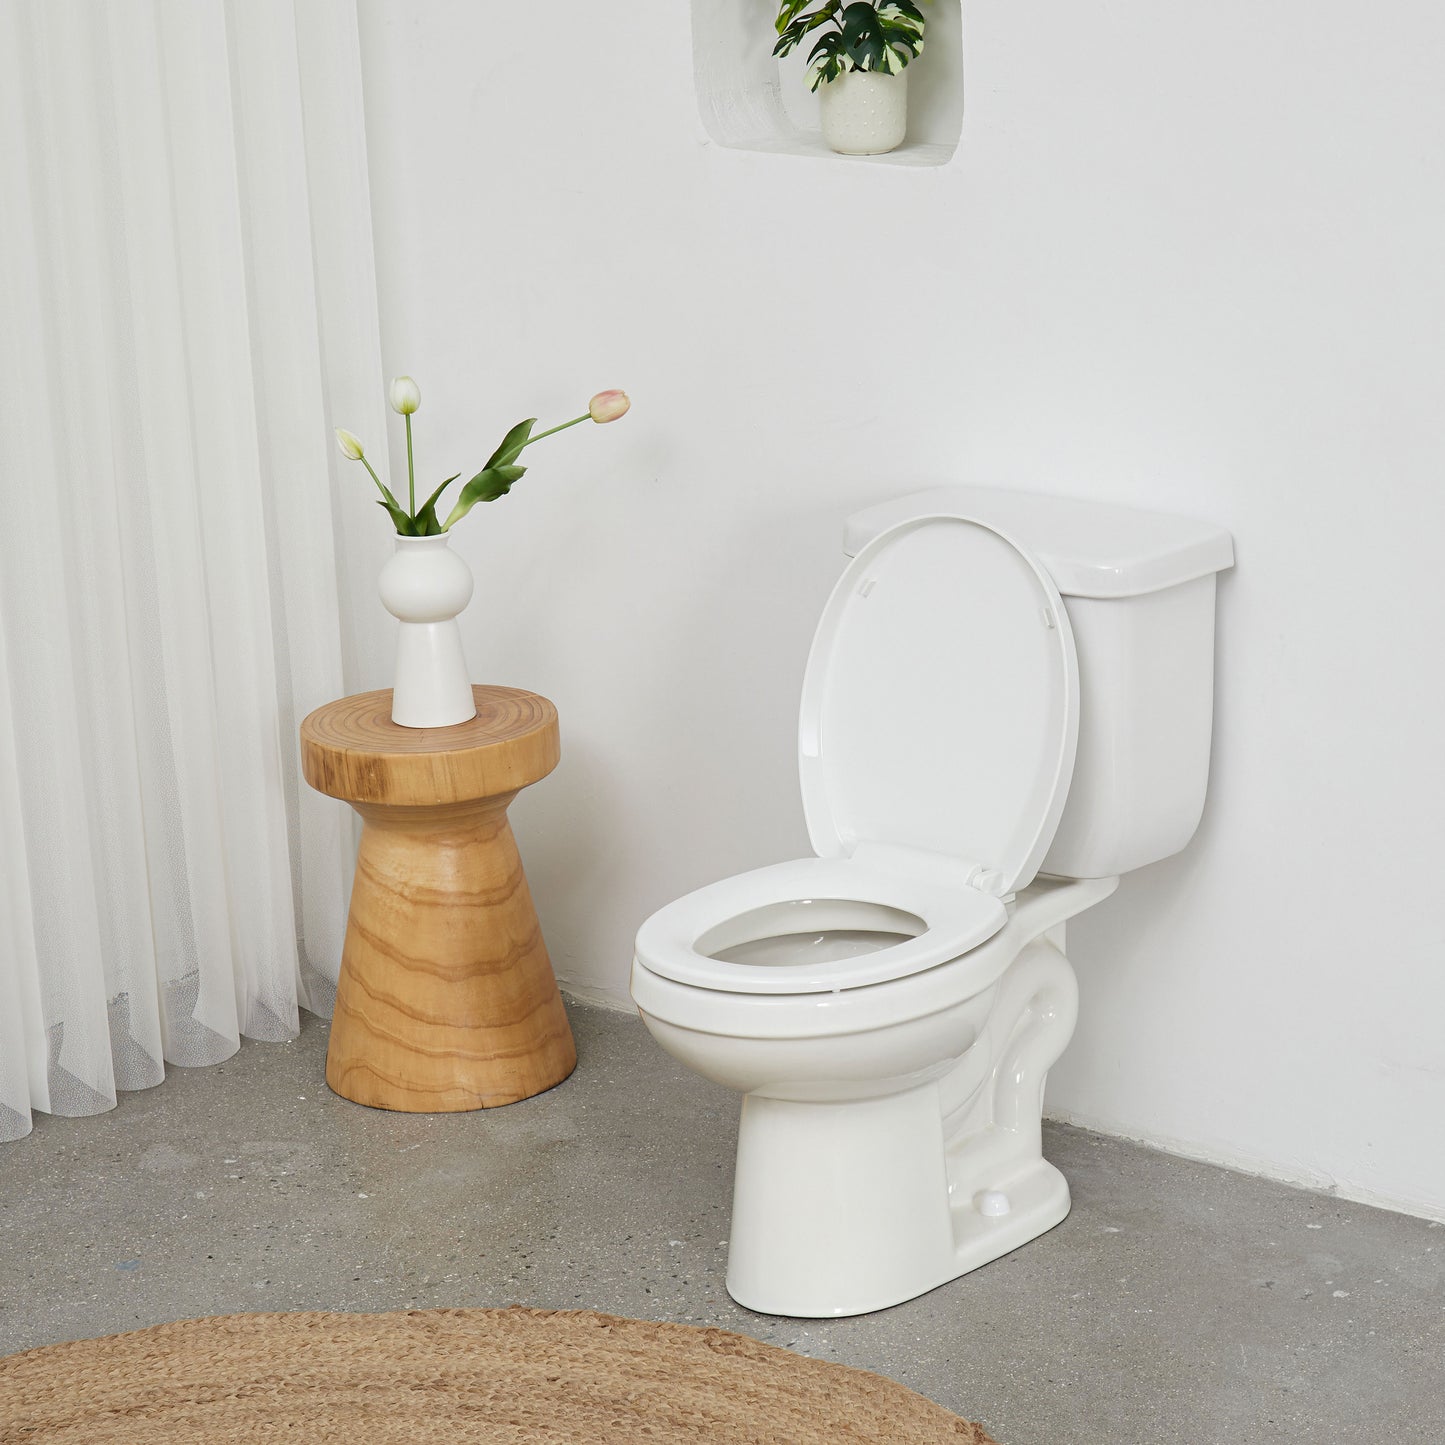 I3901S Slow Close Toilet Seat, Round, White